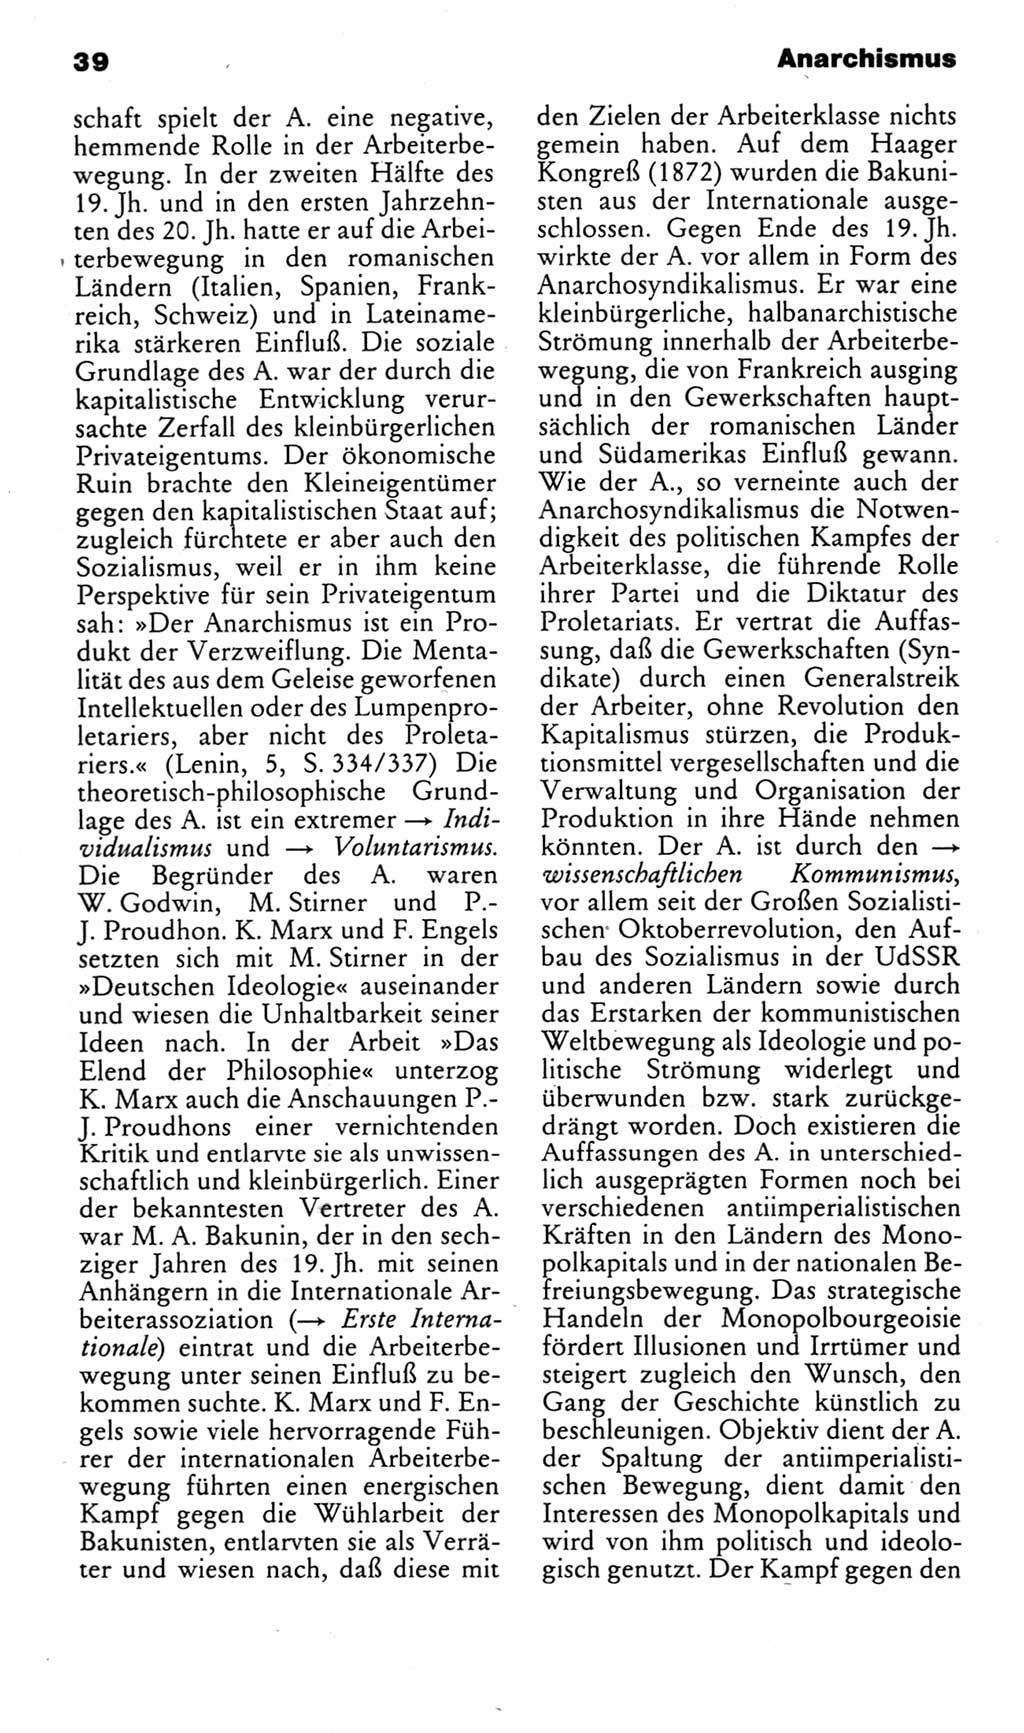 Kleines politisches Wörterbuch [Deutsche Demokratische Republik (DDR)] 1983, Seite 39 (Kl. pol. Wb. DDR 1983, S. 39)